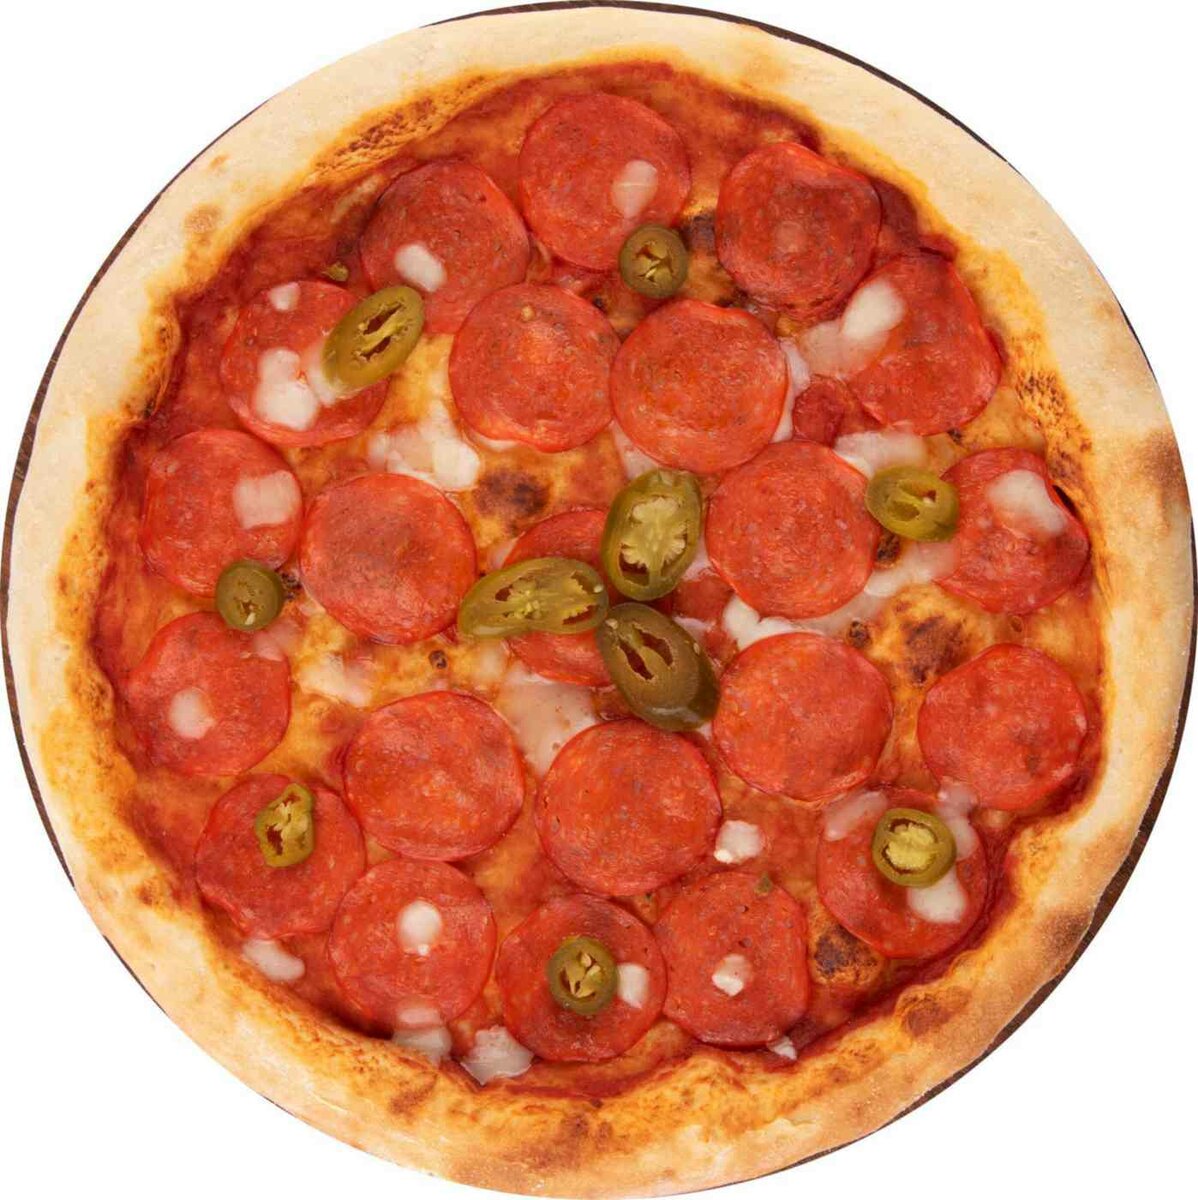 томатный соус для пиццы пепперони фото 1